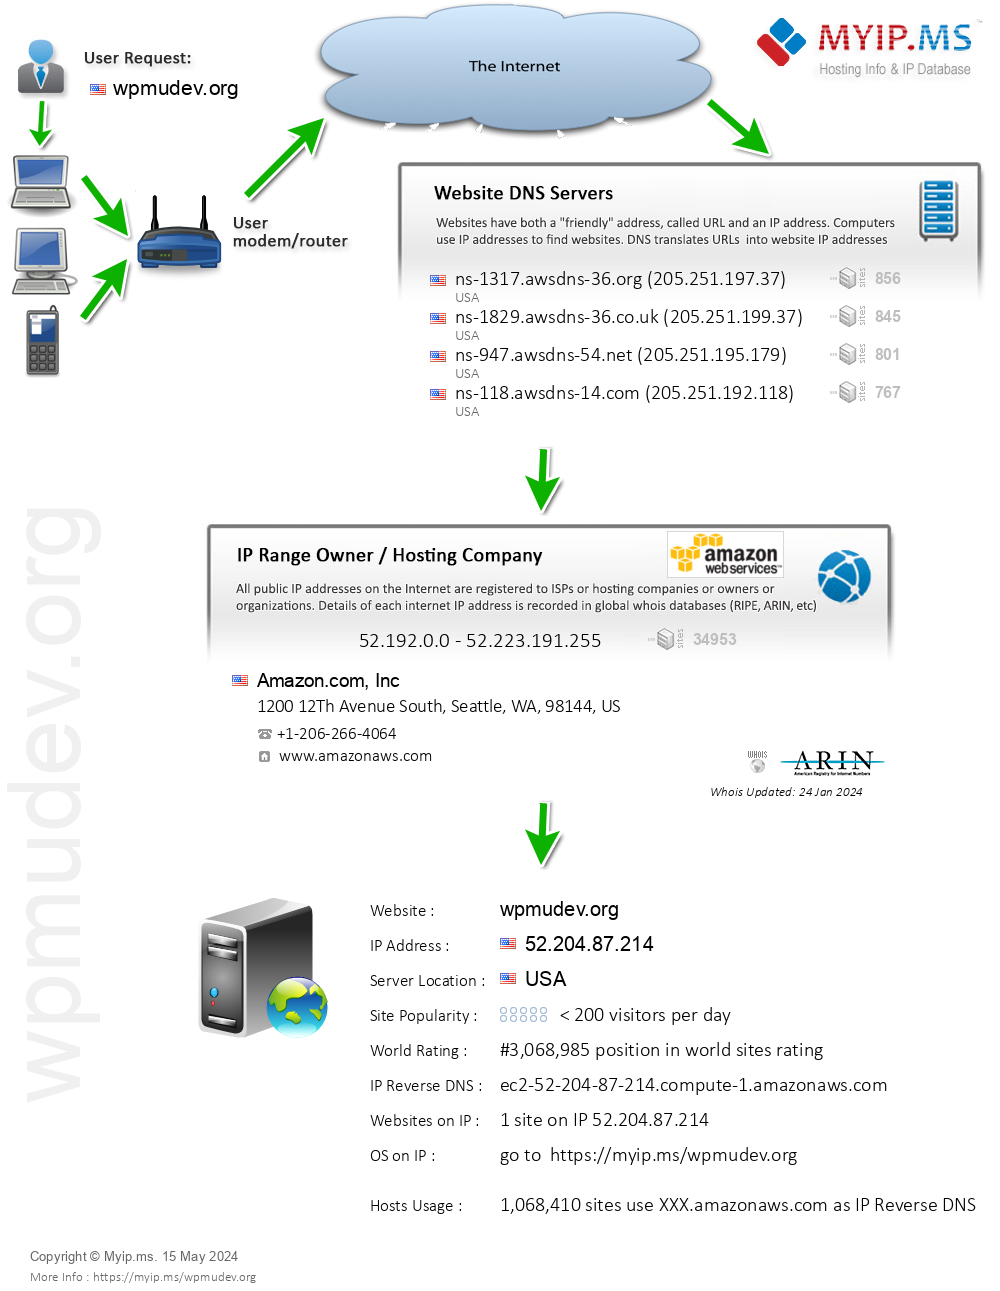 Wpmudev.org - Website Hosting Visual IP Diagram